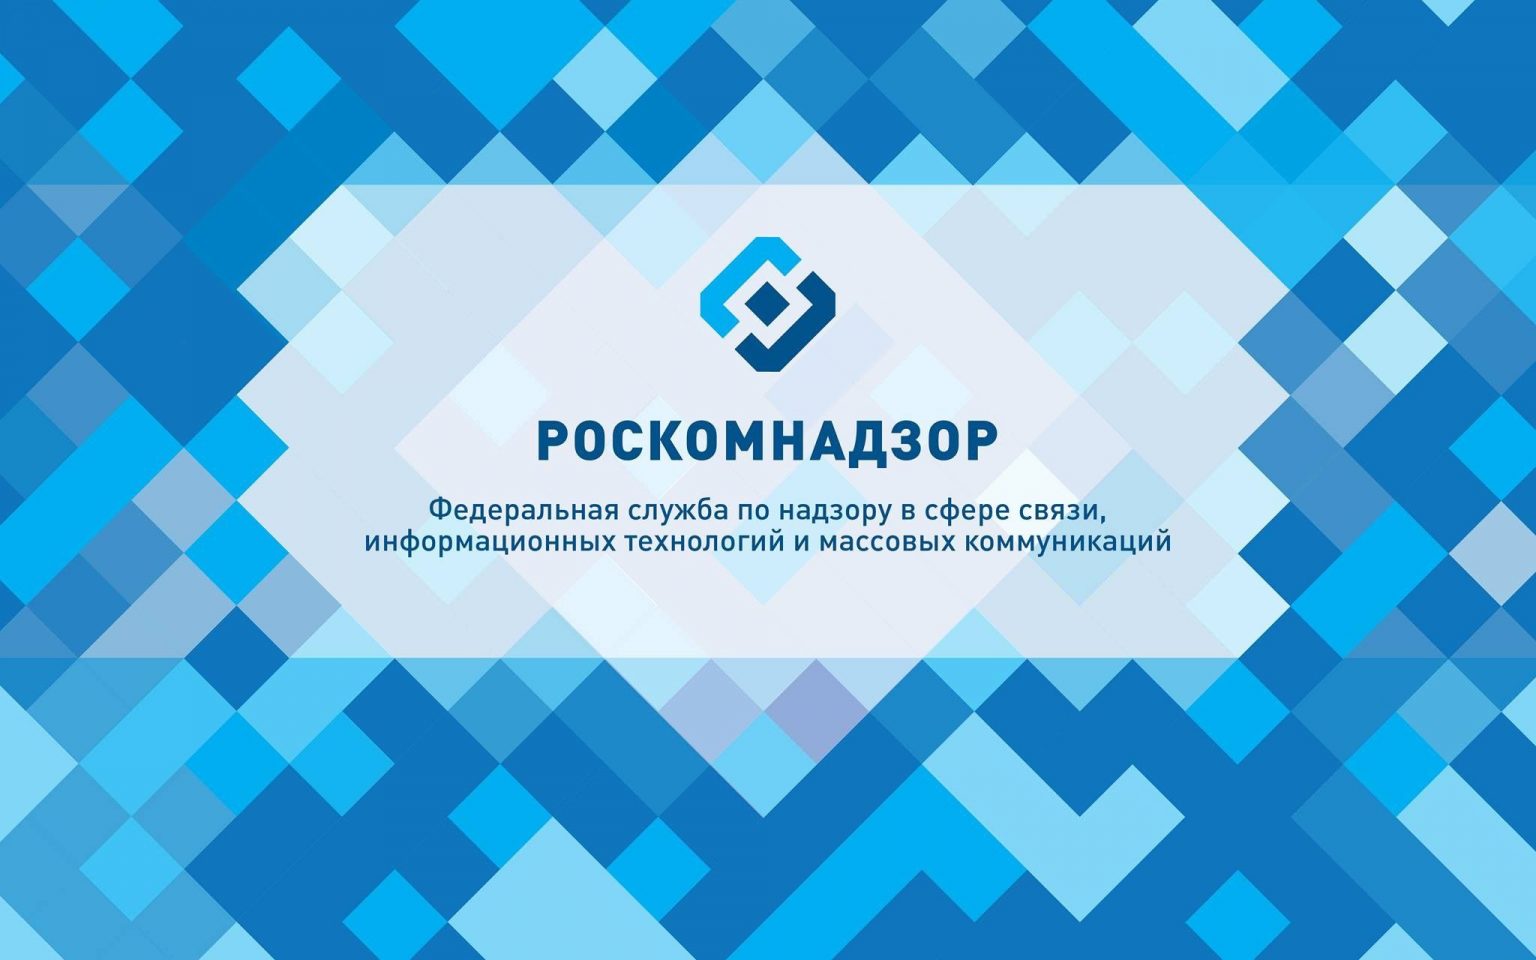 Блогеров с 10 тысячами подписчиков могут обязать отправлять сведения в Роскомнадзор